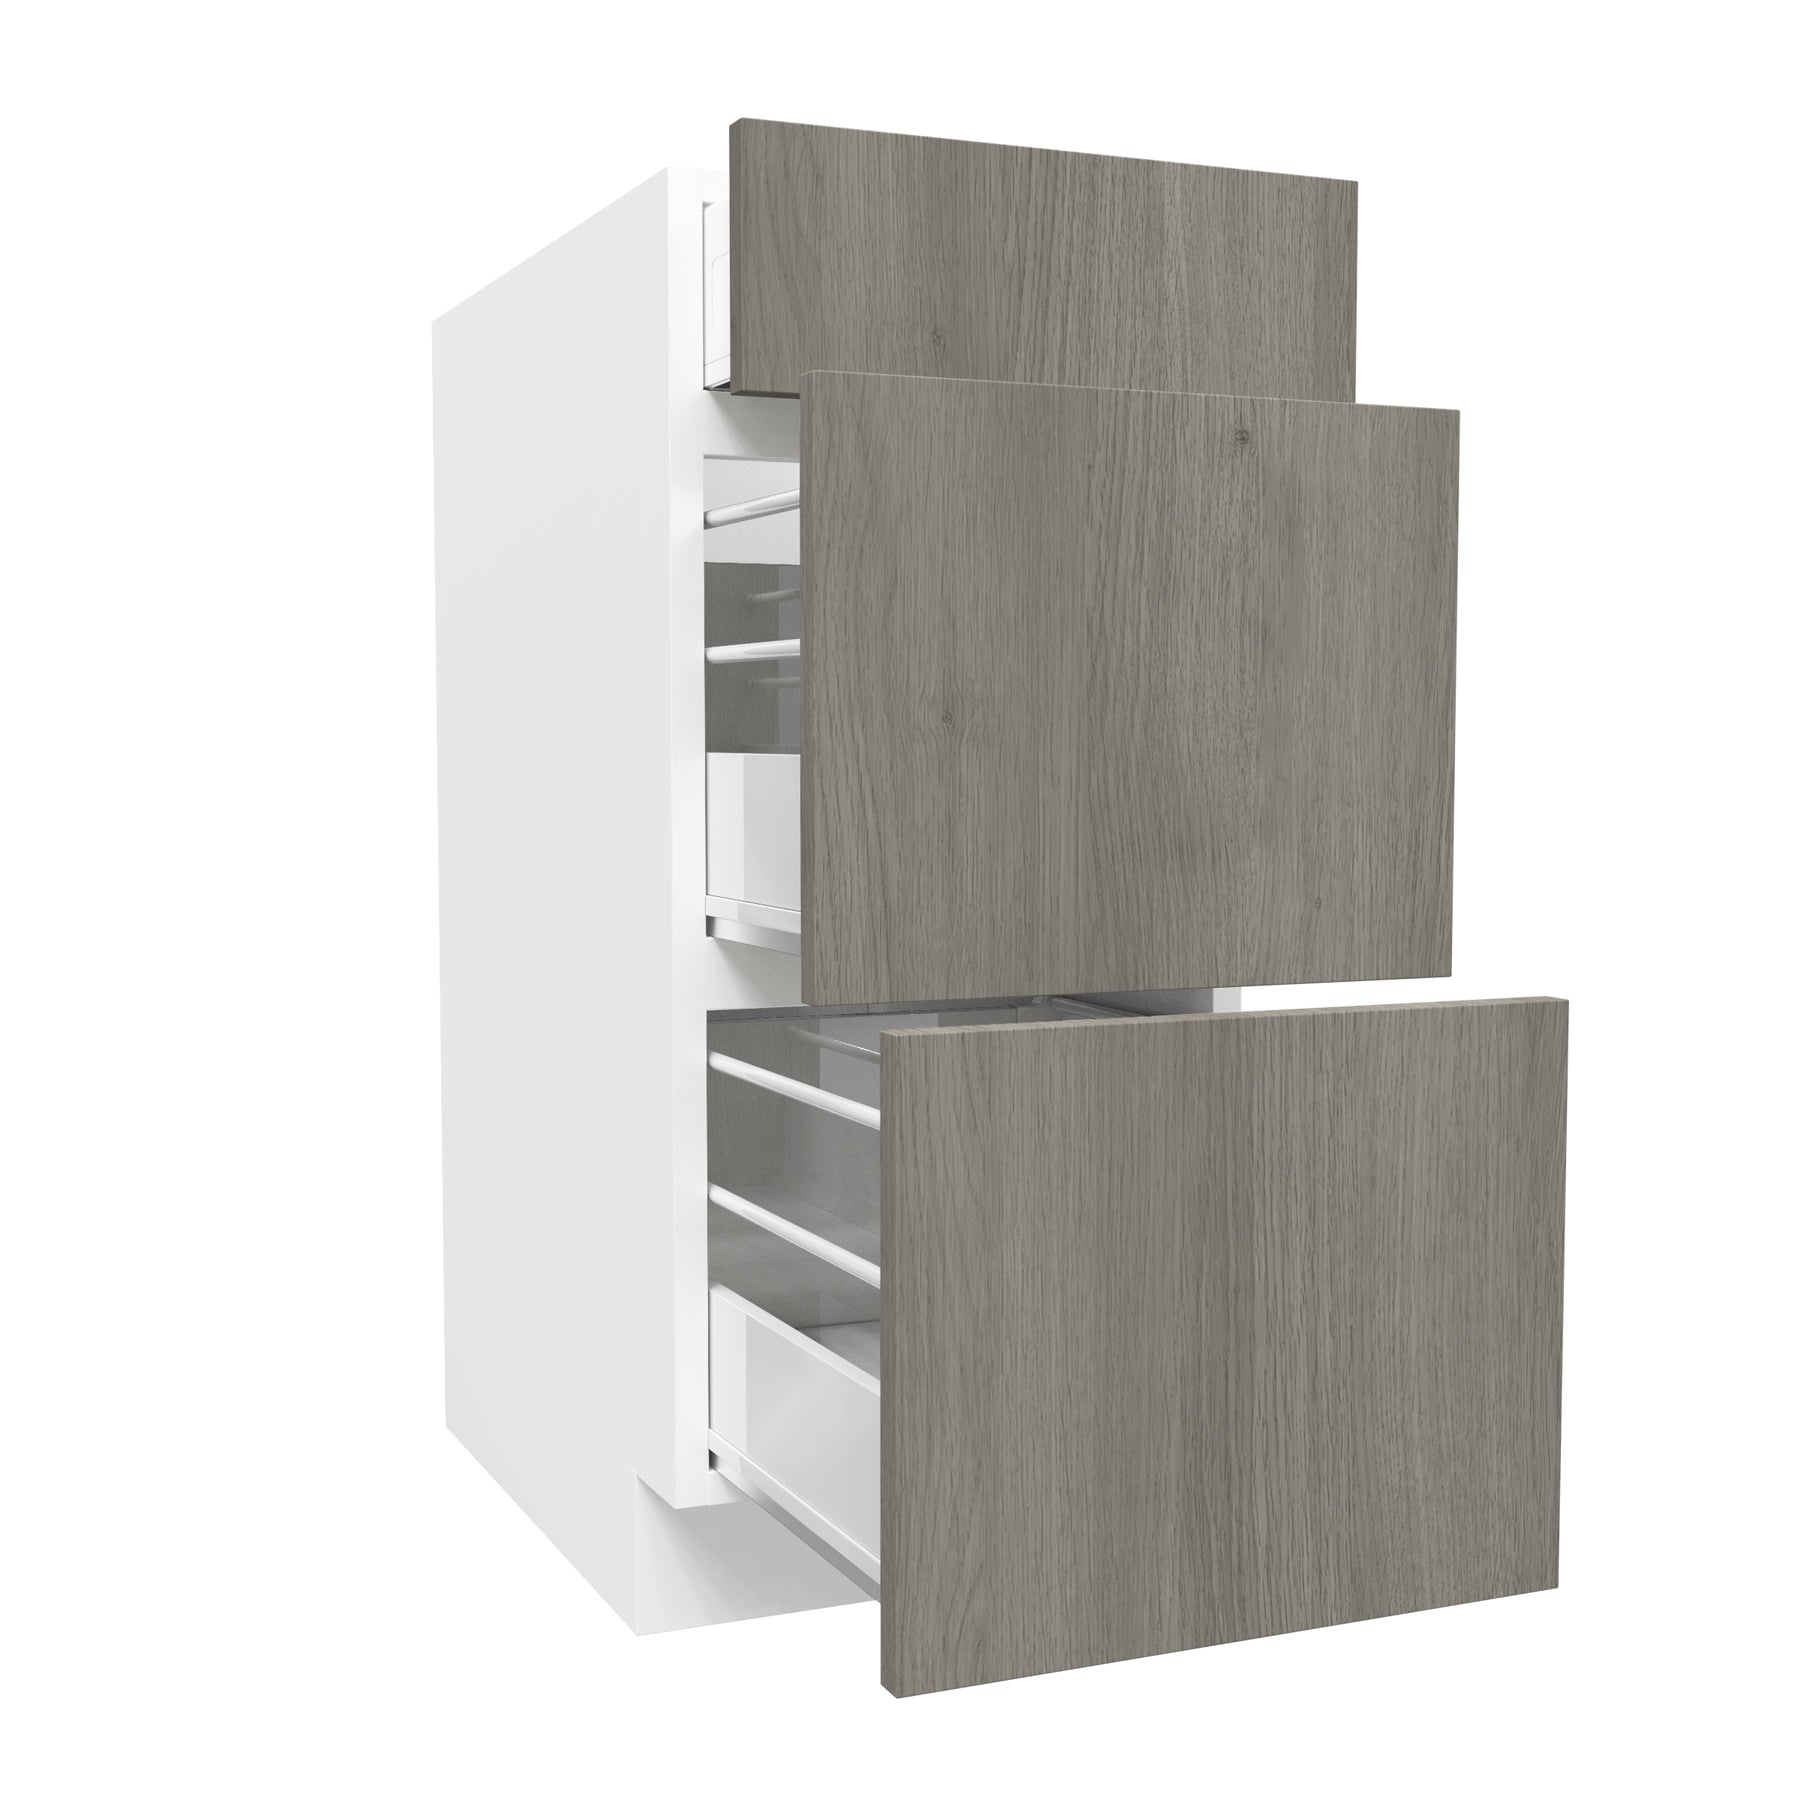 3 Drawer Base Cabinet| Matrix Silver | 15W x 34.5H x 24D